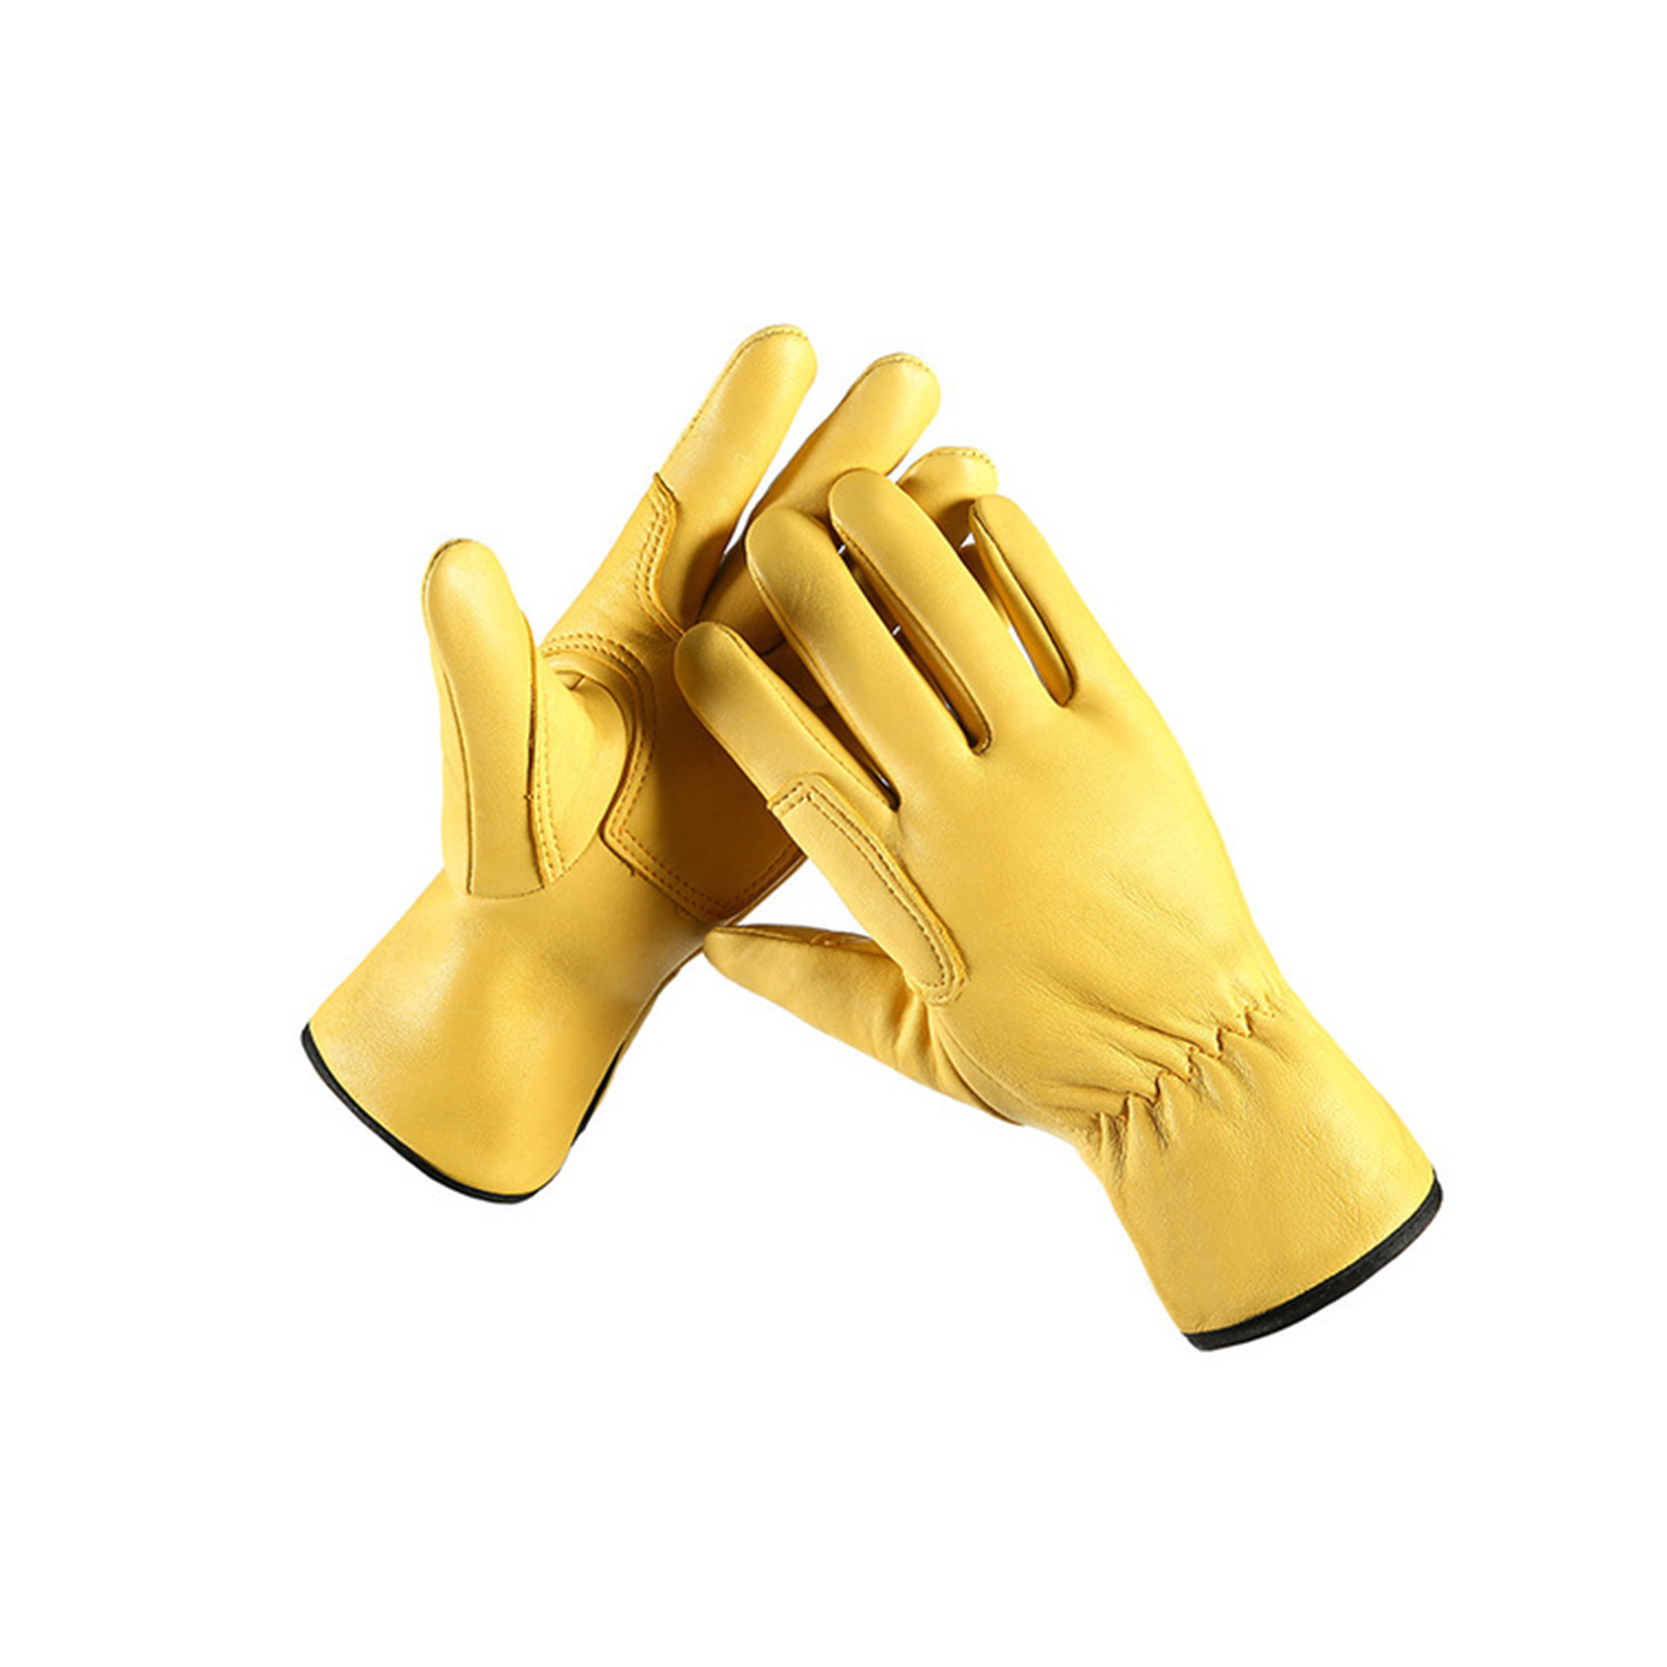 Unlined Txiv neej Cowhide Leather Work Gloves, Tsav Hnab looj tes Featured duab